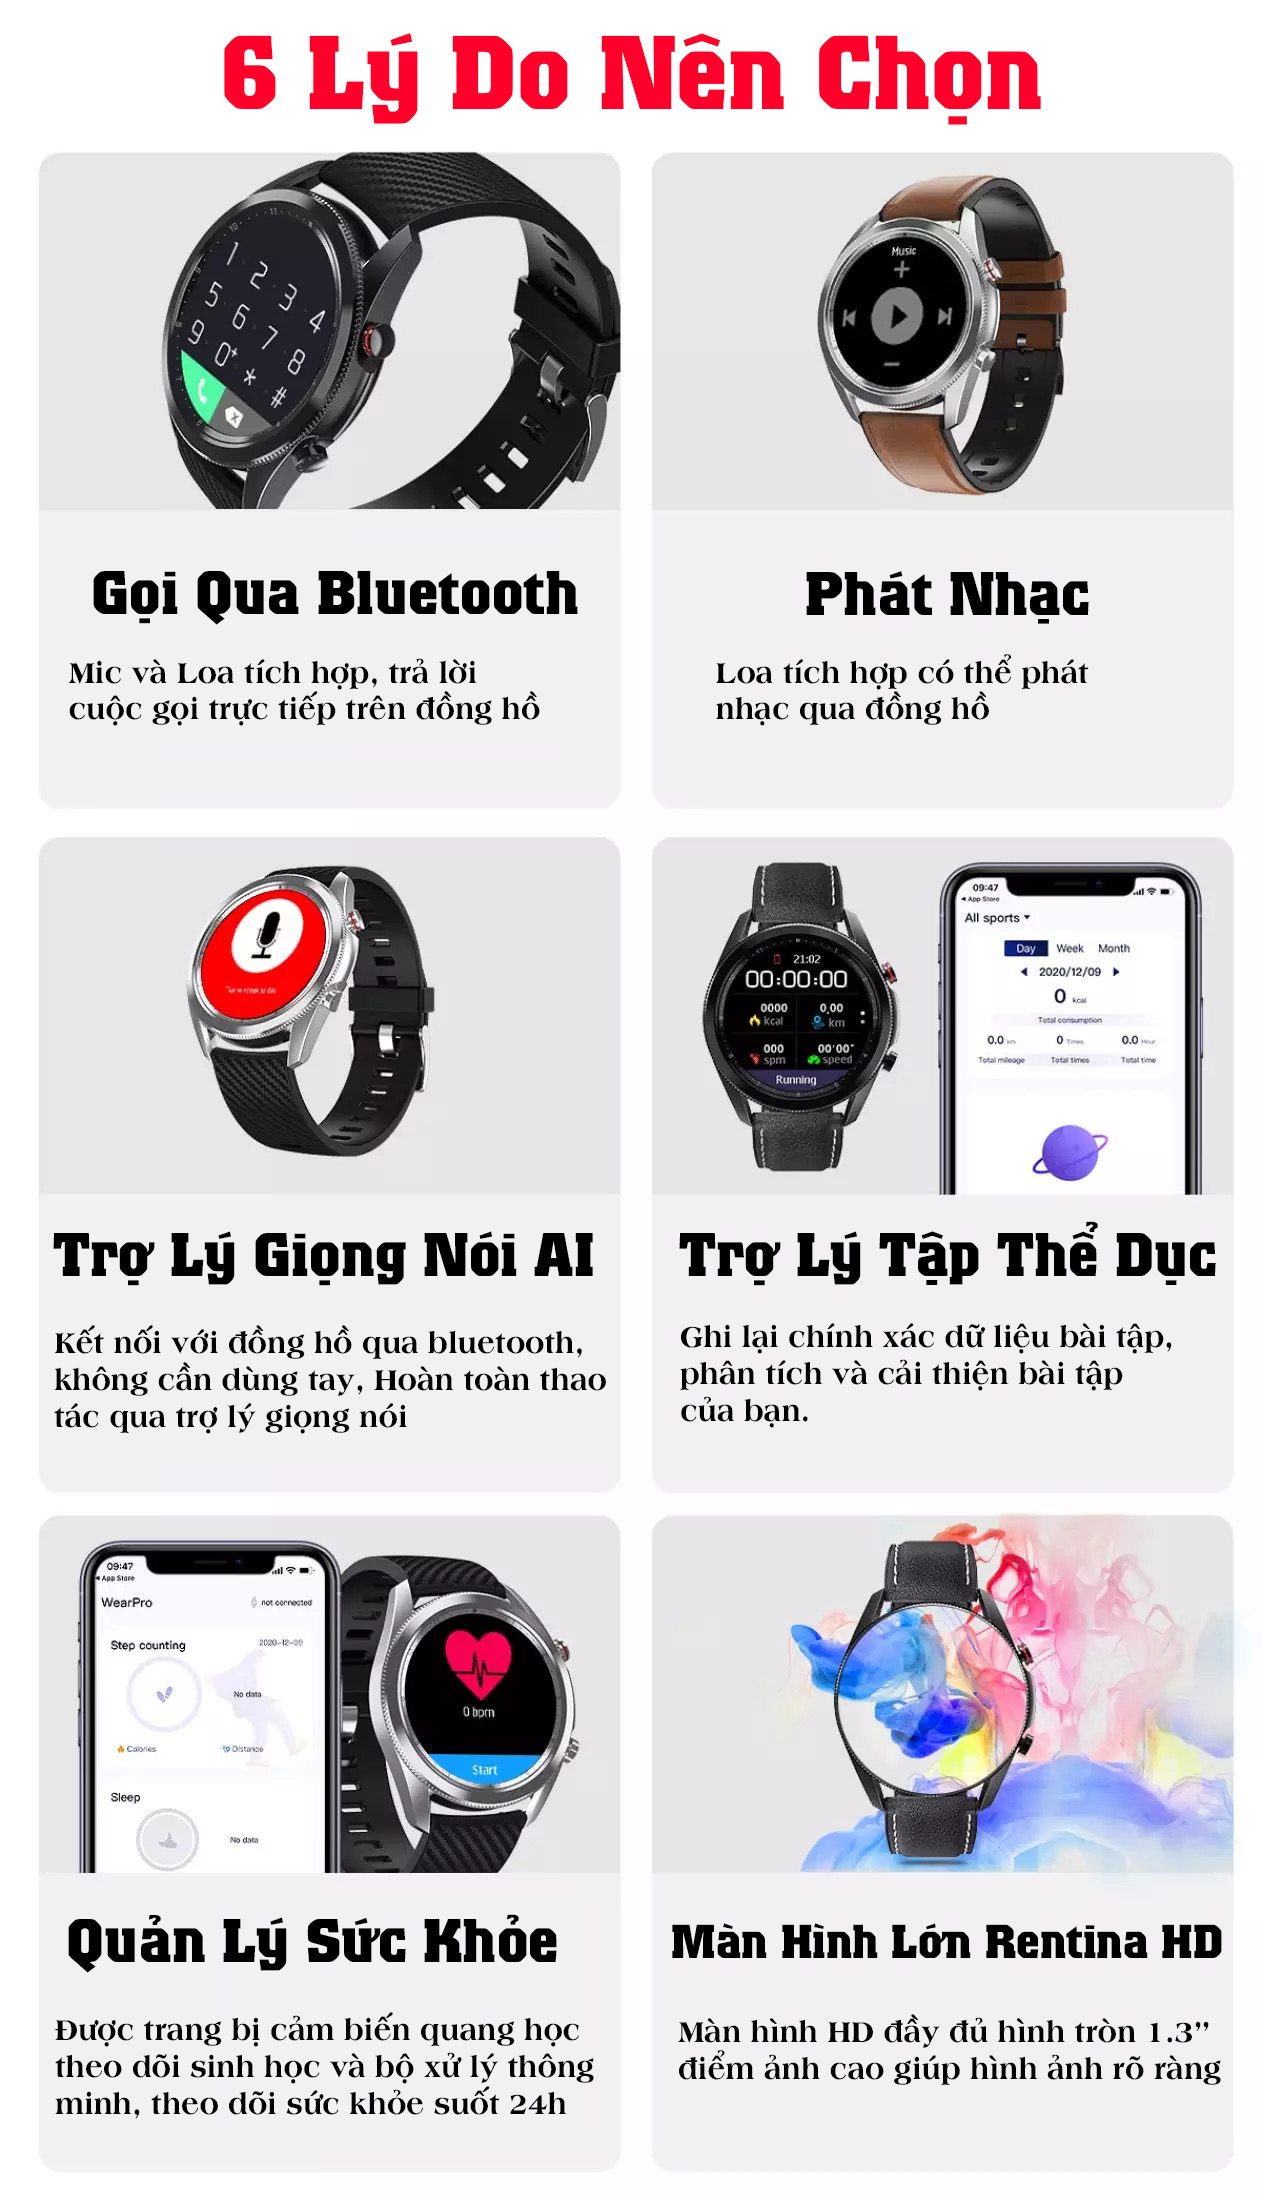 Đồng hồ thông minh DT91 nghe gọi giá rẻ , Thay đổi hình nền cá nhân tùy ý , nhận thông báo app , ngôn ngữ Tiếng Việt + Anh